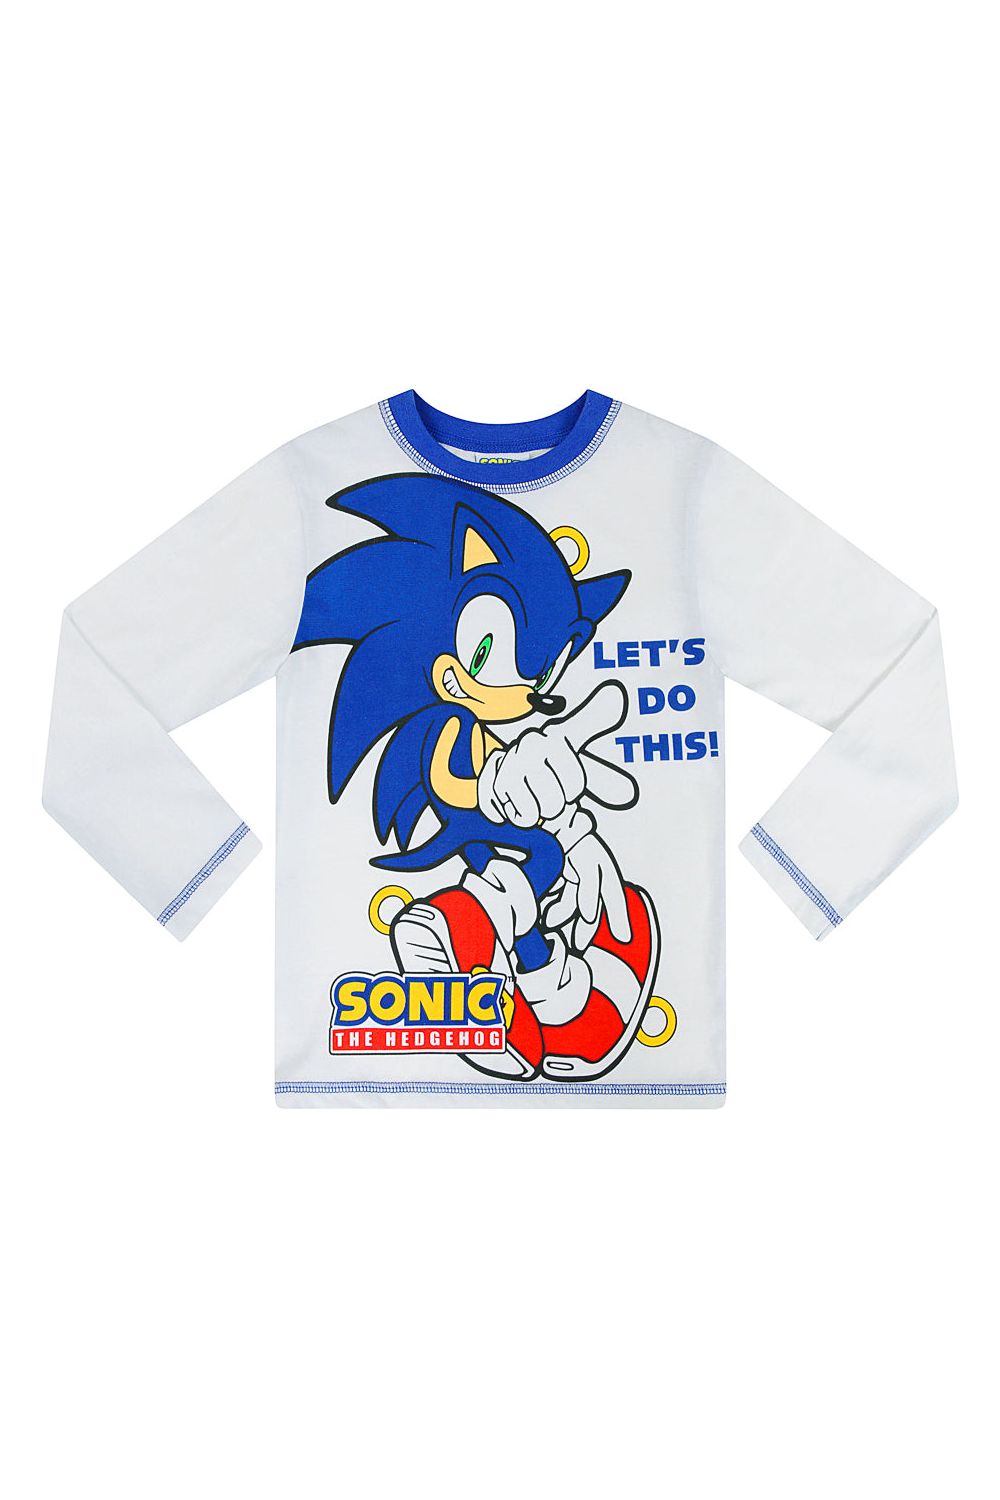 Sonic The Hedgehog Long Blue White Pyjamas - Pyjamas.com